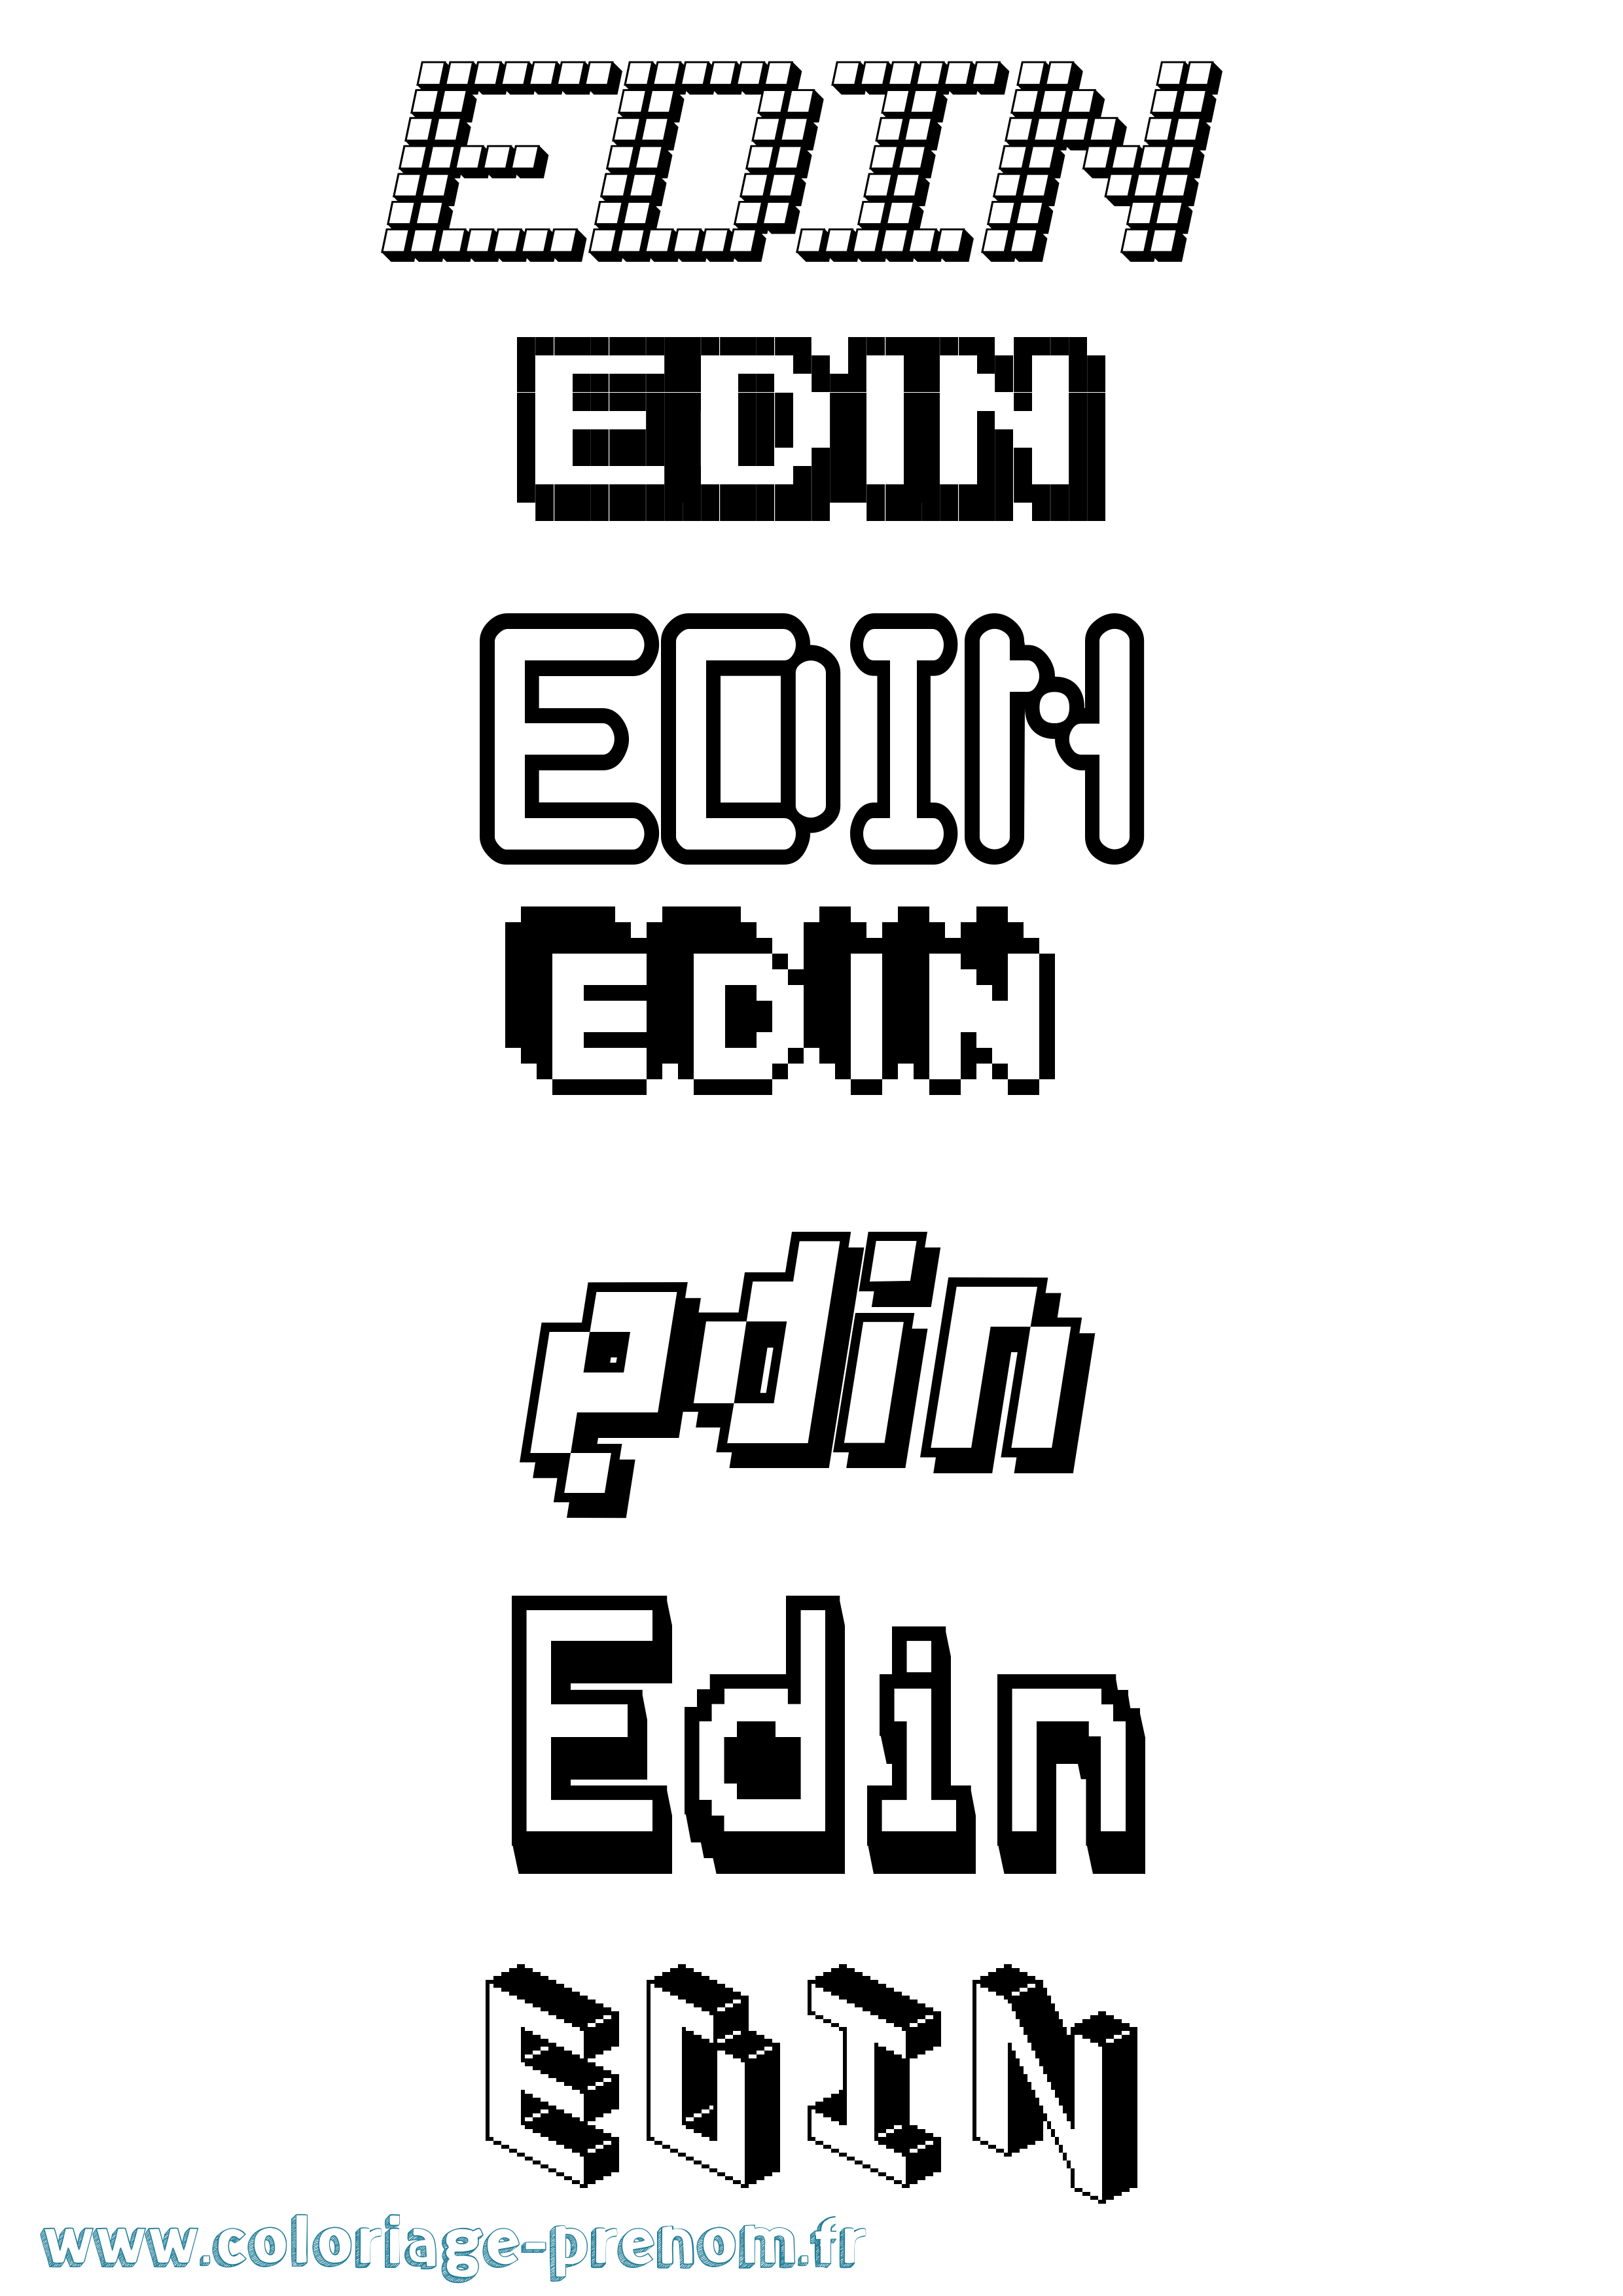 Coloriage prénom Edin Pixel